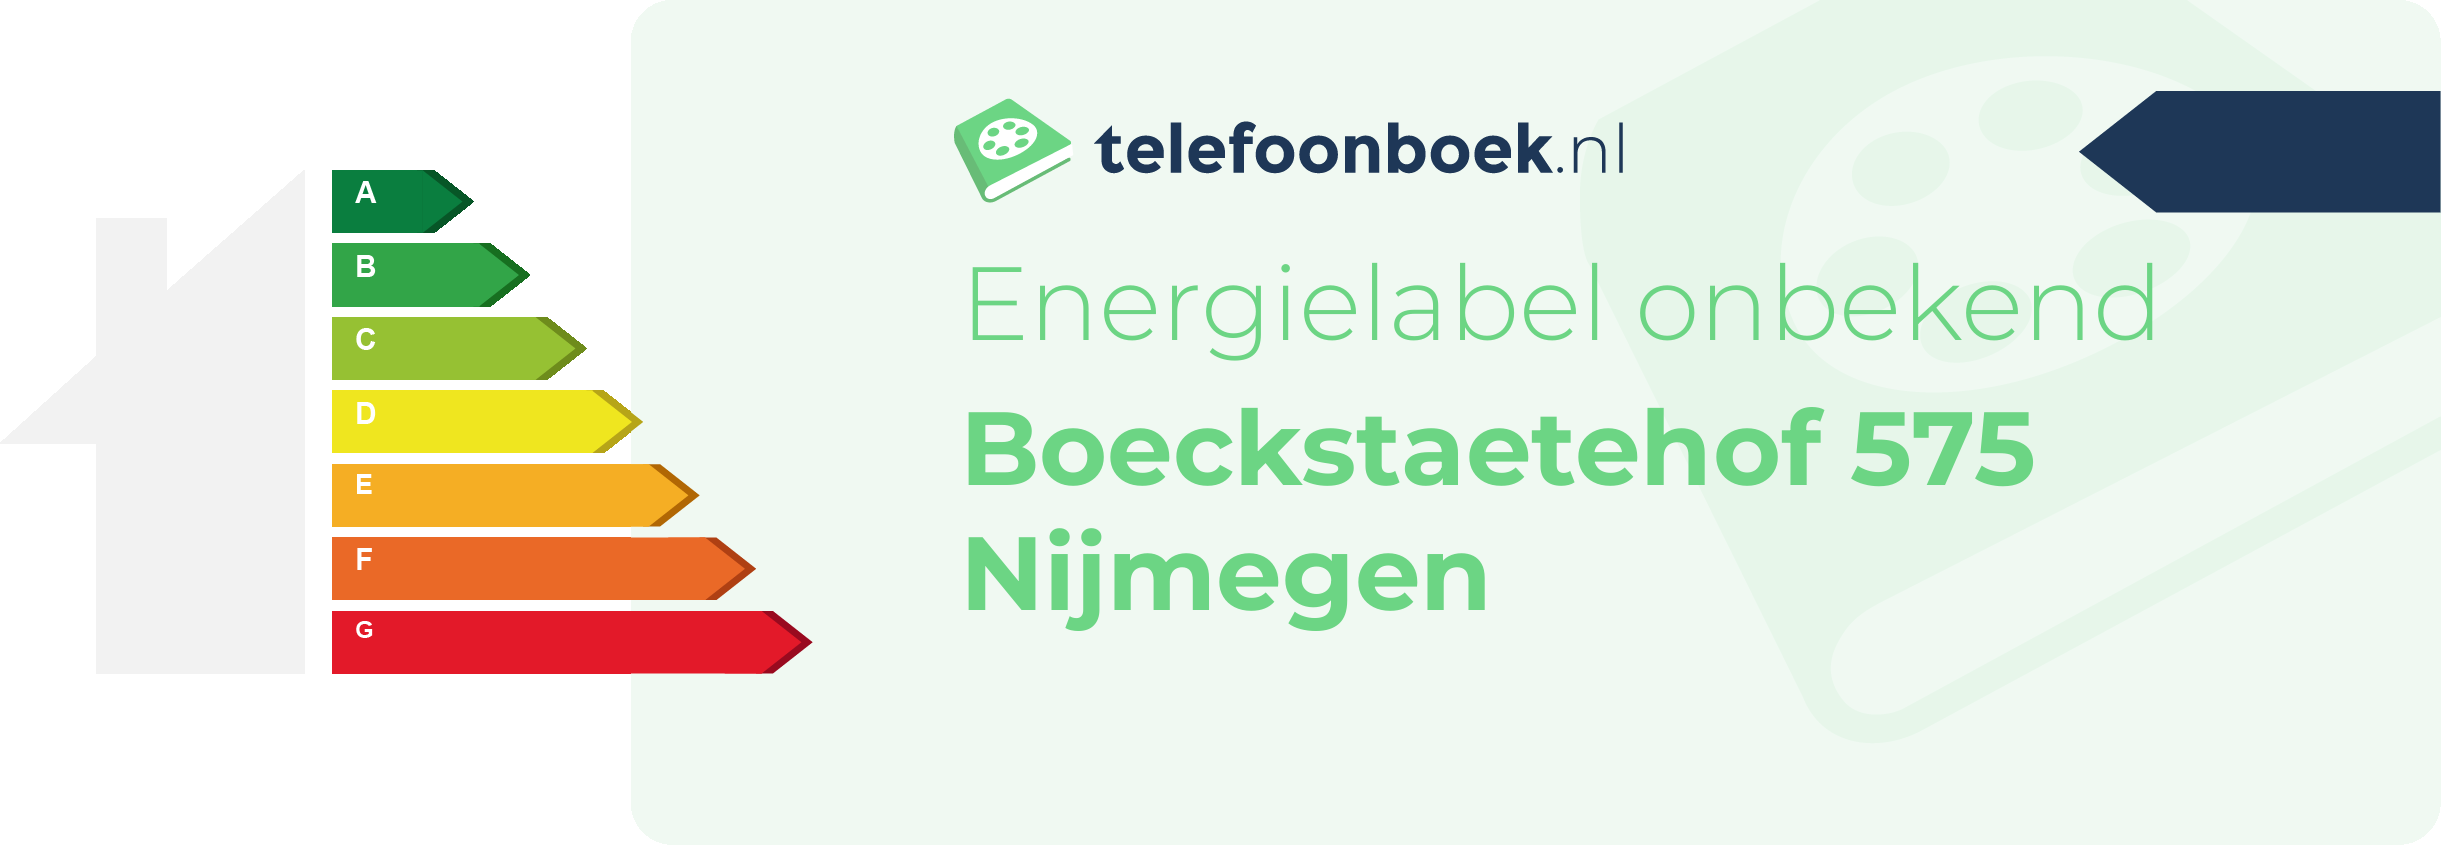 Energielabel Boeckstaetehof 575 Nijmegen